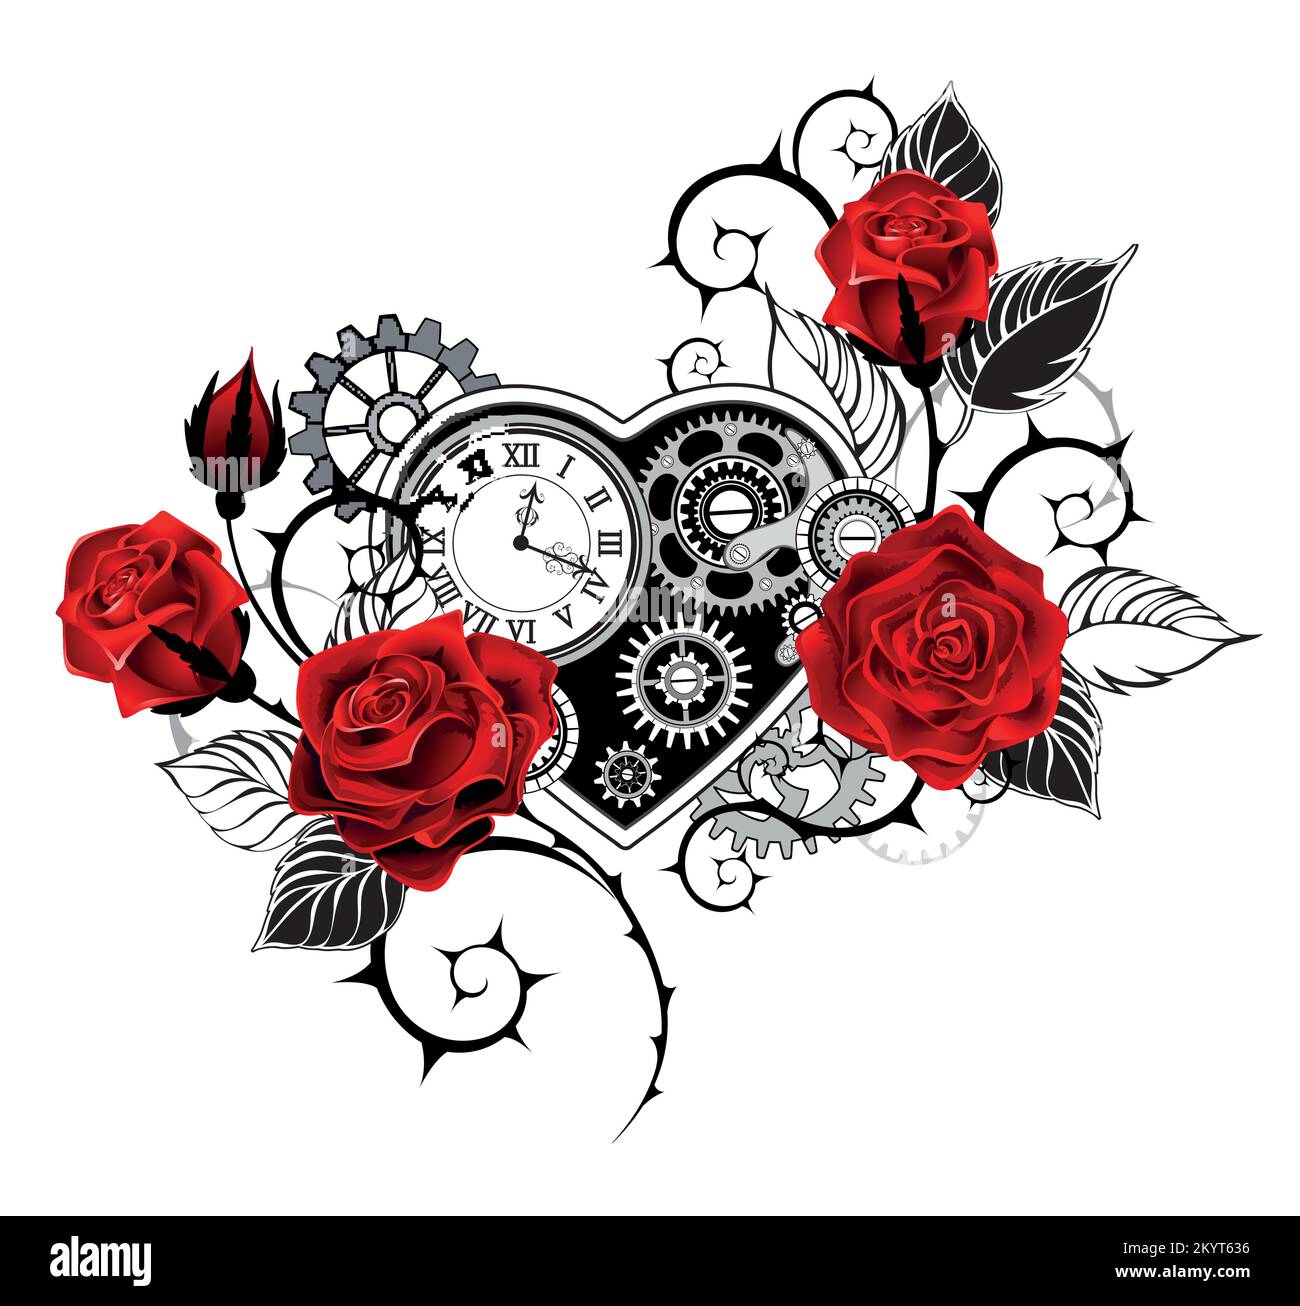 Cuore meccanico disegnato artisticamente con un orologio antico, decorato con rose rosse con steli neri e spiky su fondo bianco. Stile steampunk. Illustrazione Vettoriale